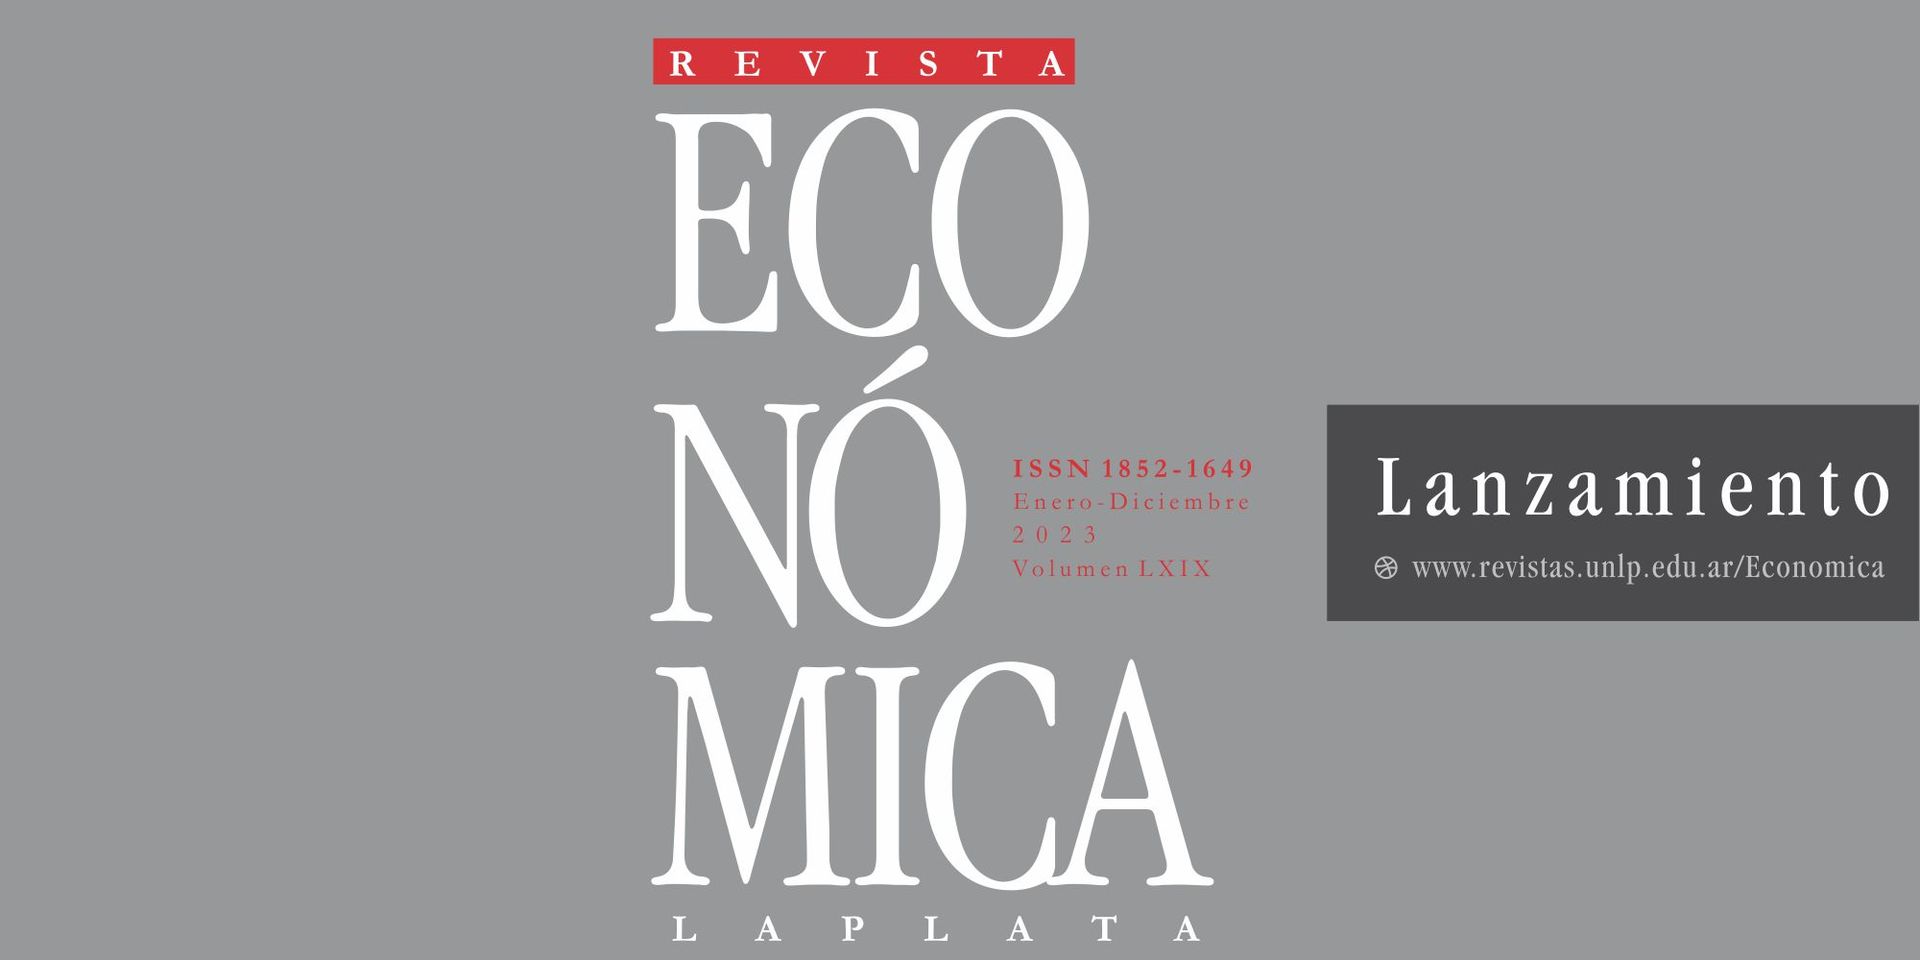 Publicación del volumen 69 de la Revista Económica